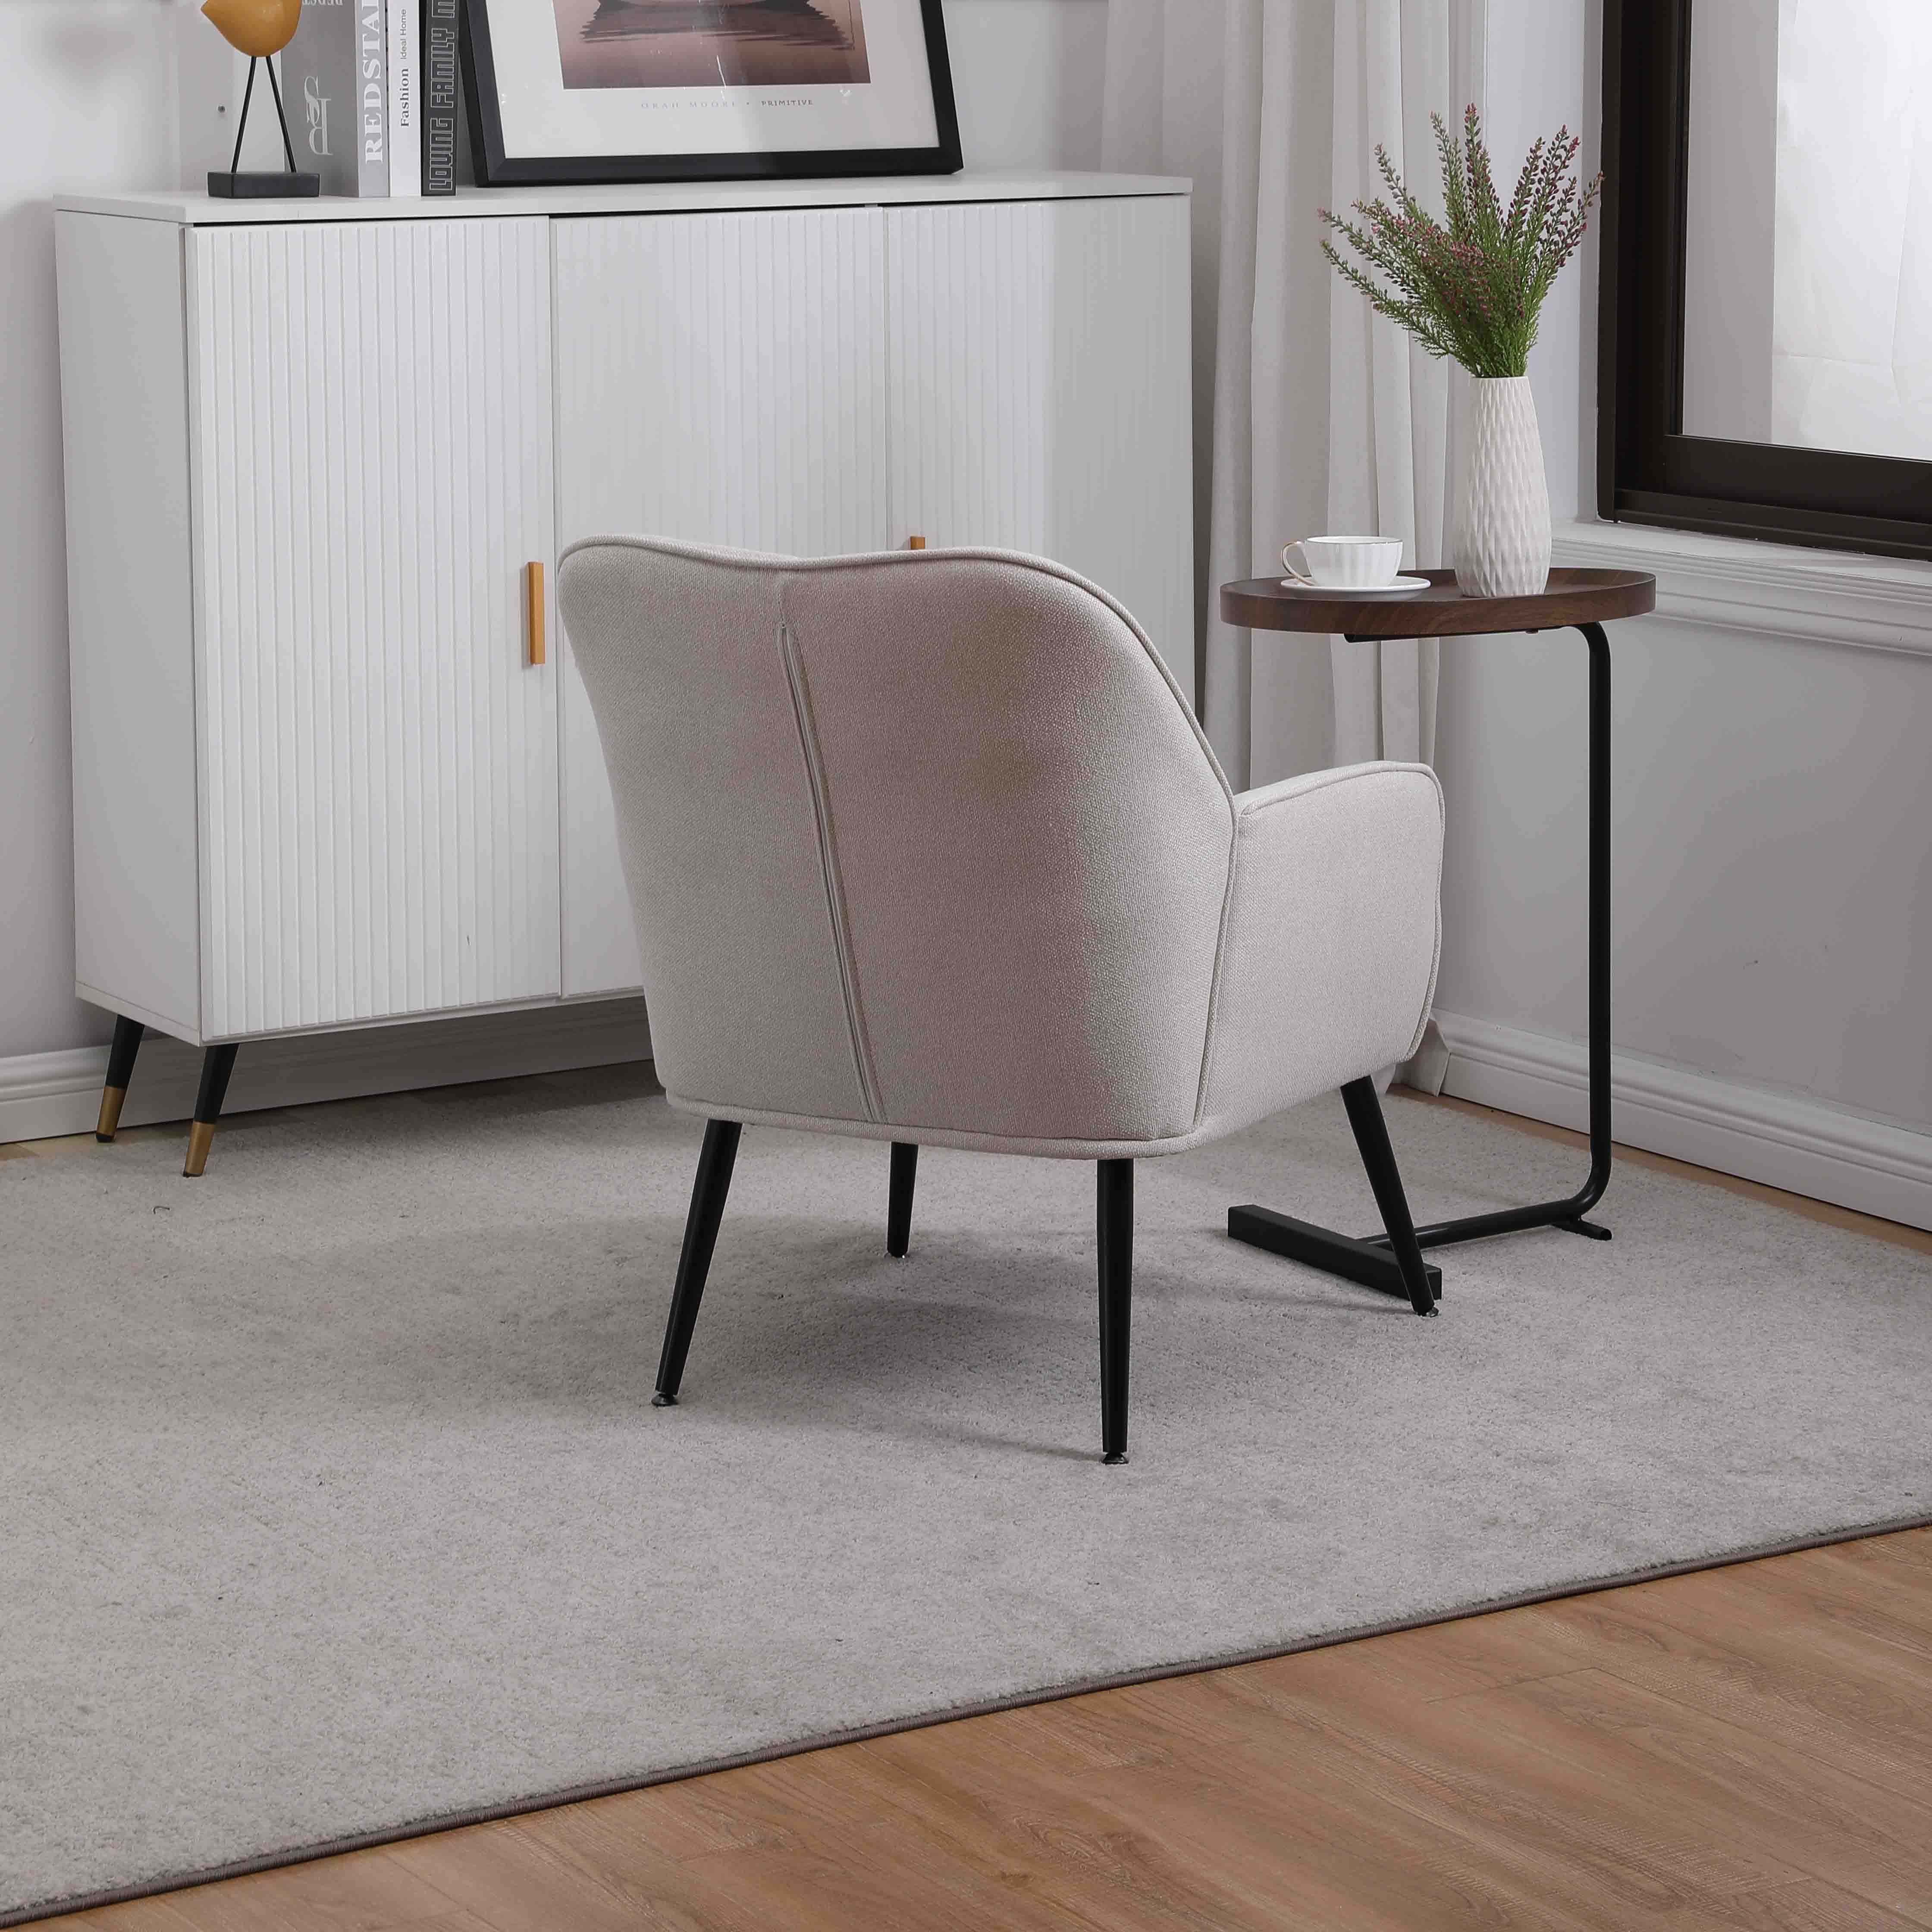 REDOM Loungesessel Relaxsessel Einzelsessel, Polstersessel, Einzelsofa (Büro weiß Gepolsterte Kaffee Stuhl), Stuhl Metallbeinen Freizeit mit Fernsehsessel